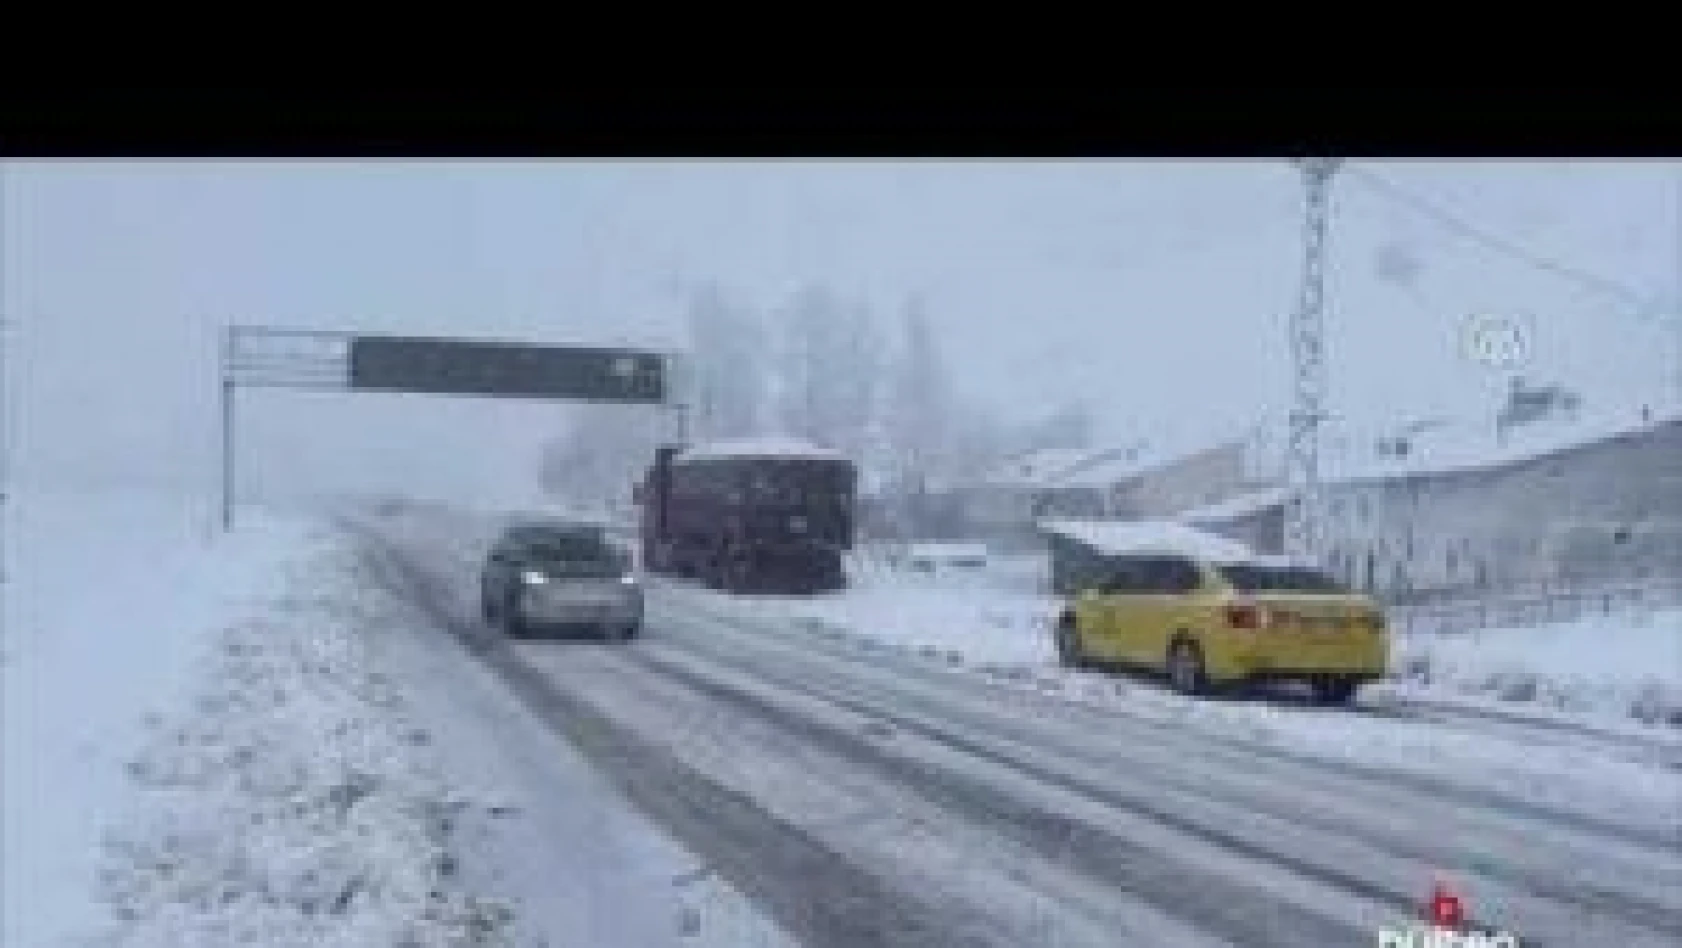 Bayburt Erzurum kara yolu Kop Dağı Geçidi'nde ulaşım kontrollü sağlanıyor